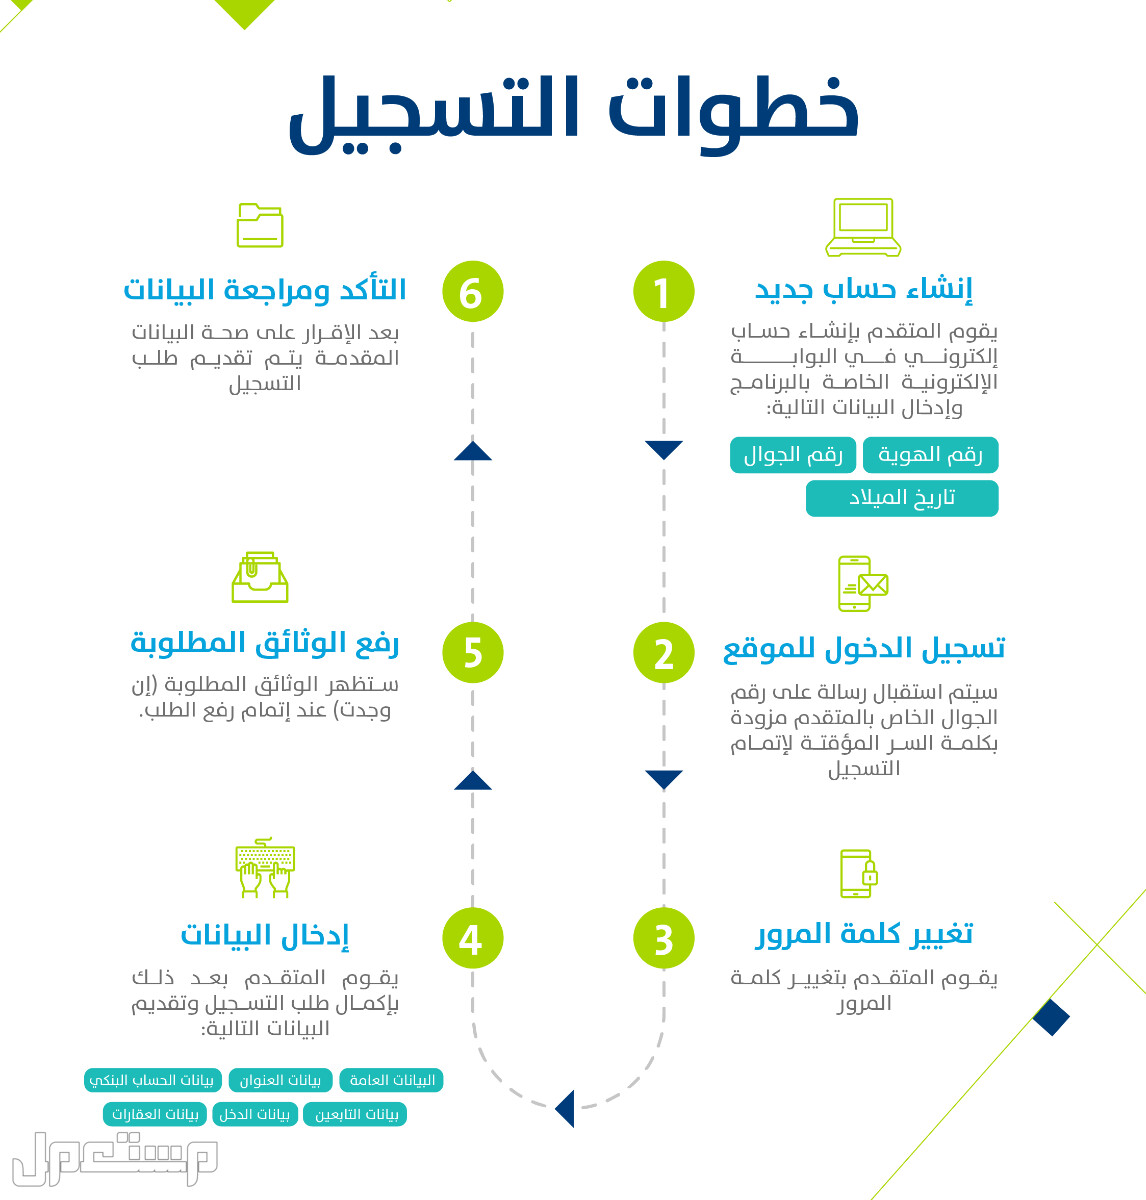 تعرف على كيفية التسجيل في حساب المواطن عقب تمديد الدعم الإضافي 1444 بالخطوات في مصر خطوات التسجيل